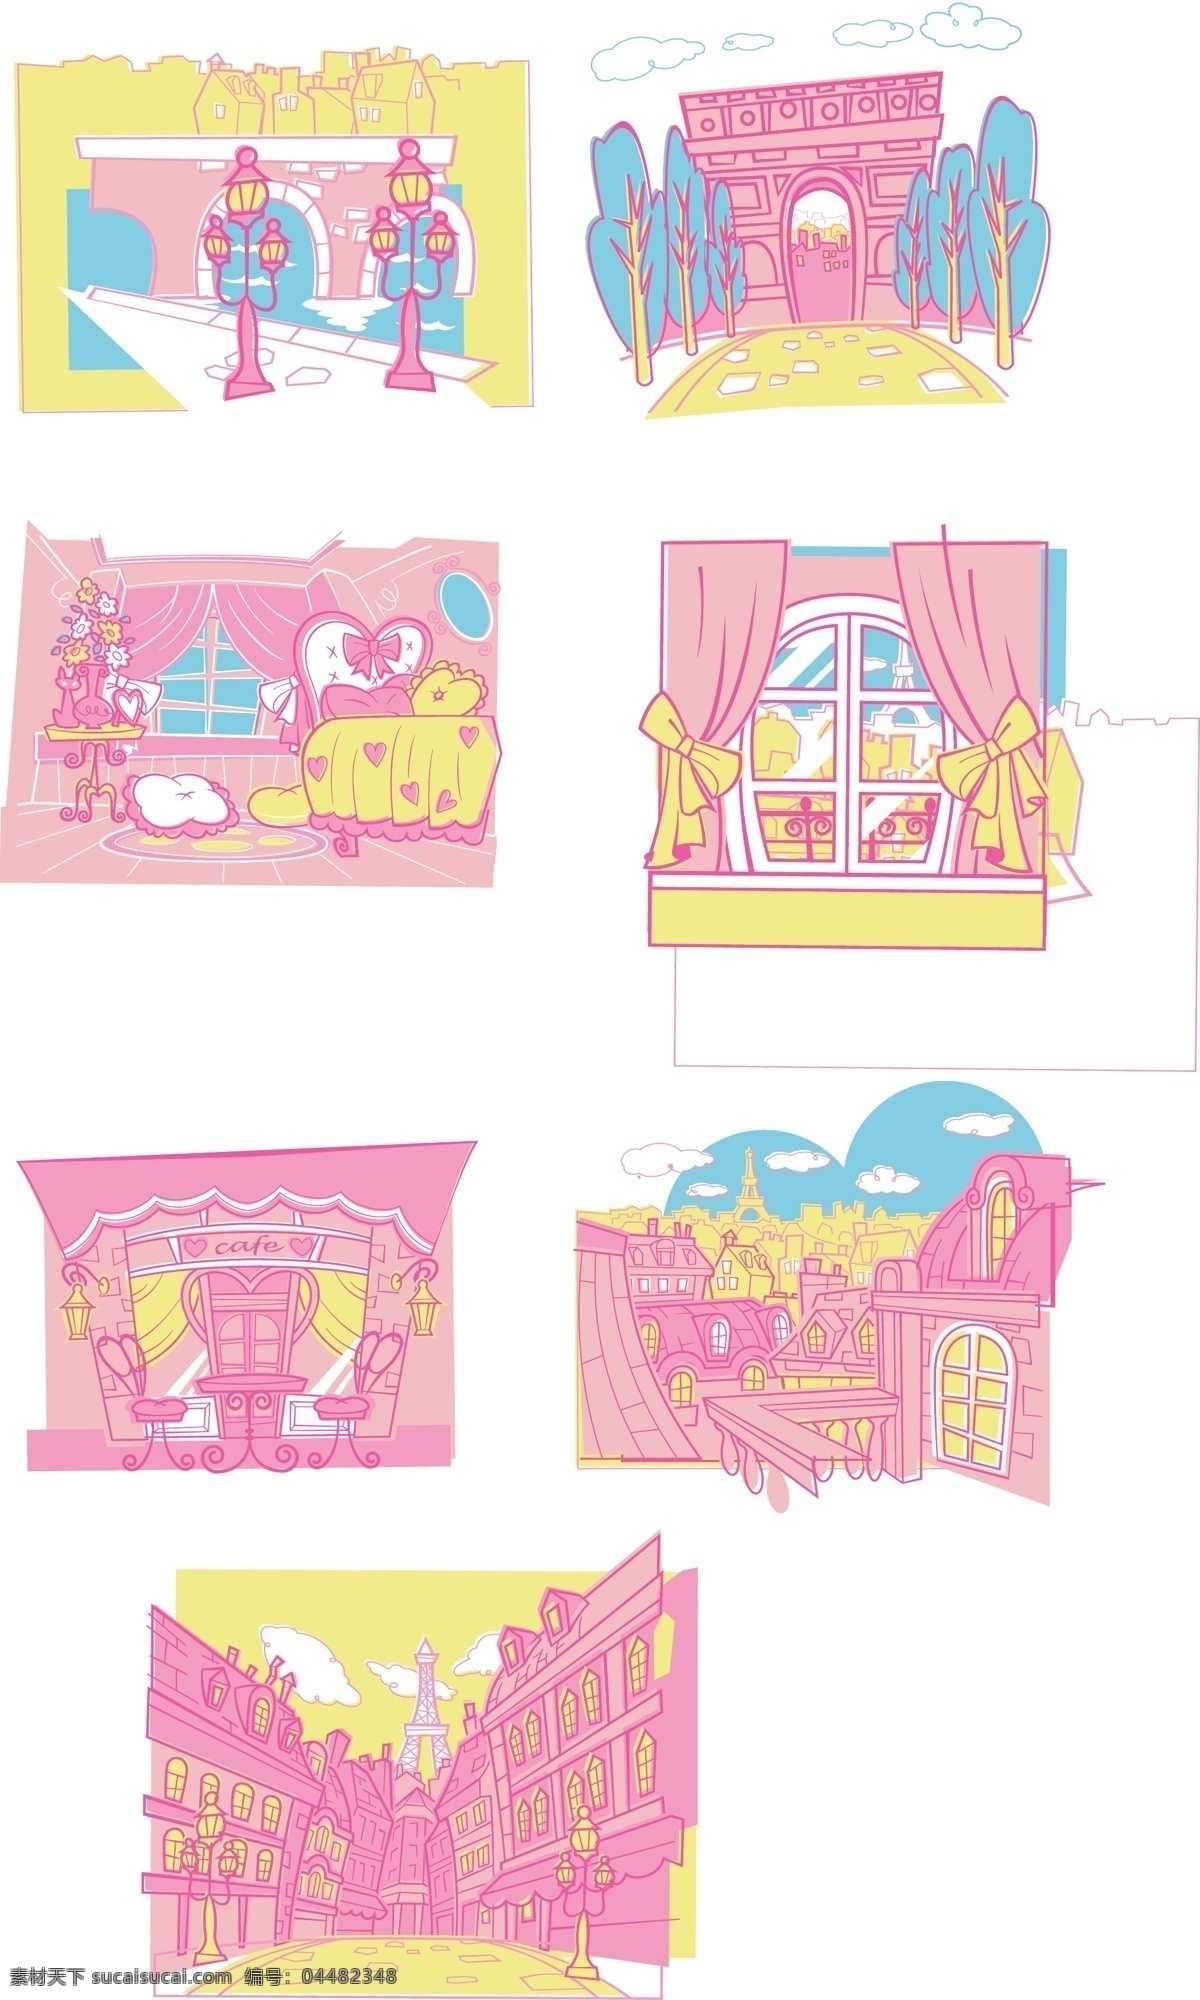 粉 小 猫咪 背景 粉色 可爱 其他矢量图 矢量图 小猫咪 卡通 头像 卡通壁纸 桌面 家居装饰素材 壁纸墙画壁纸